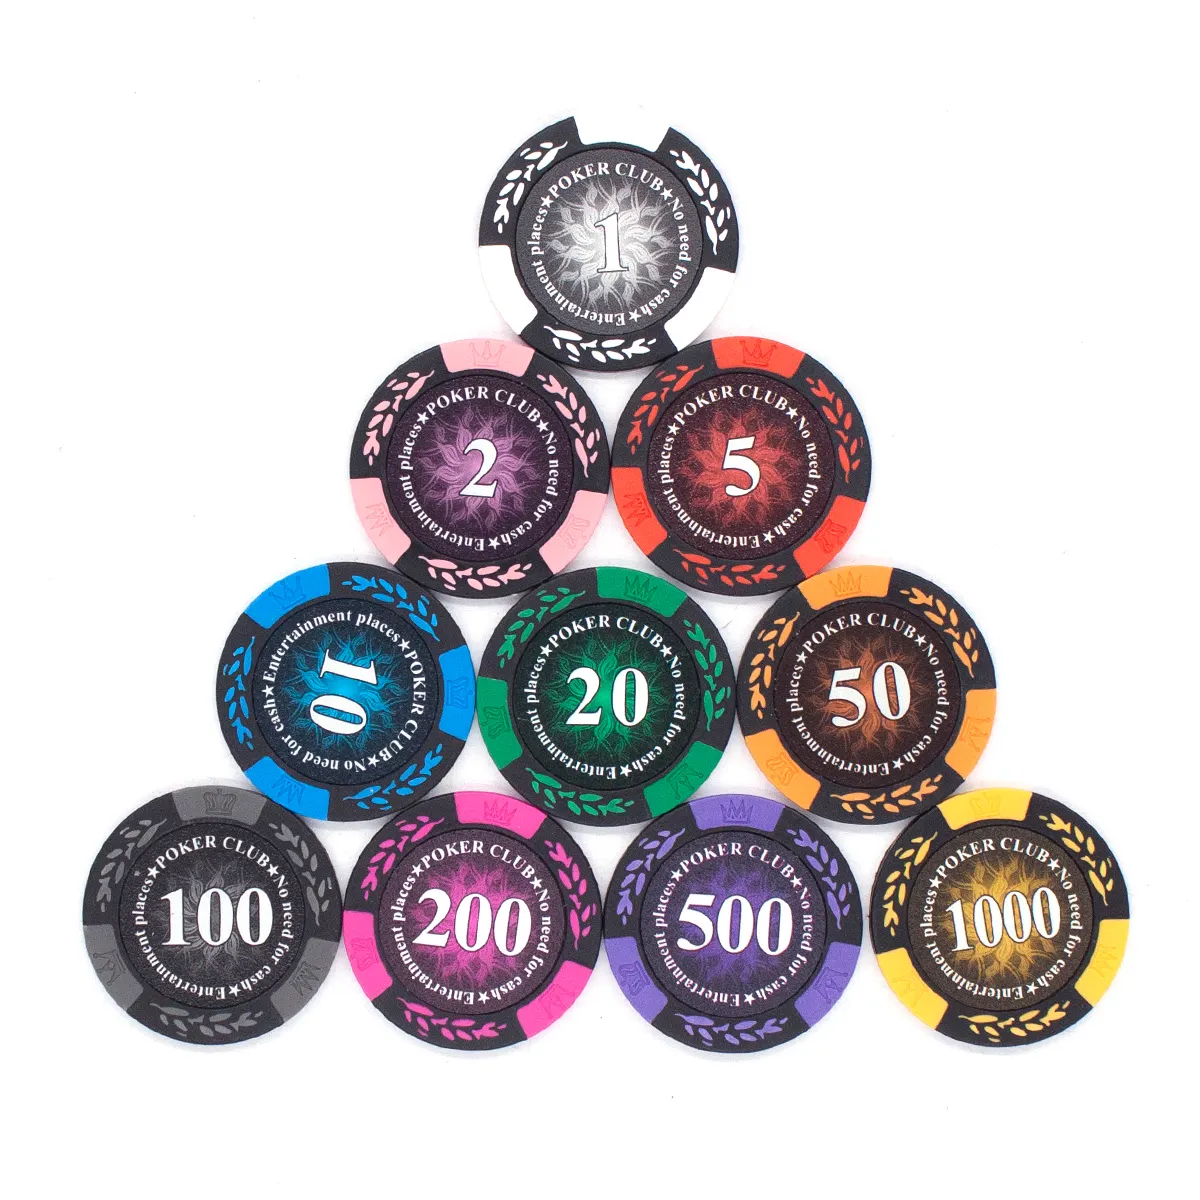 Großhandels preis hochwertige Custom Blank Poker Chips Casino Ton Keramik Poker Chips 14g